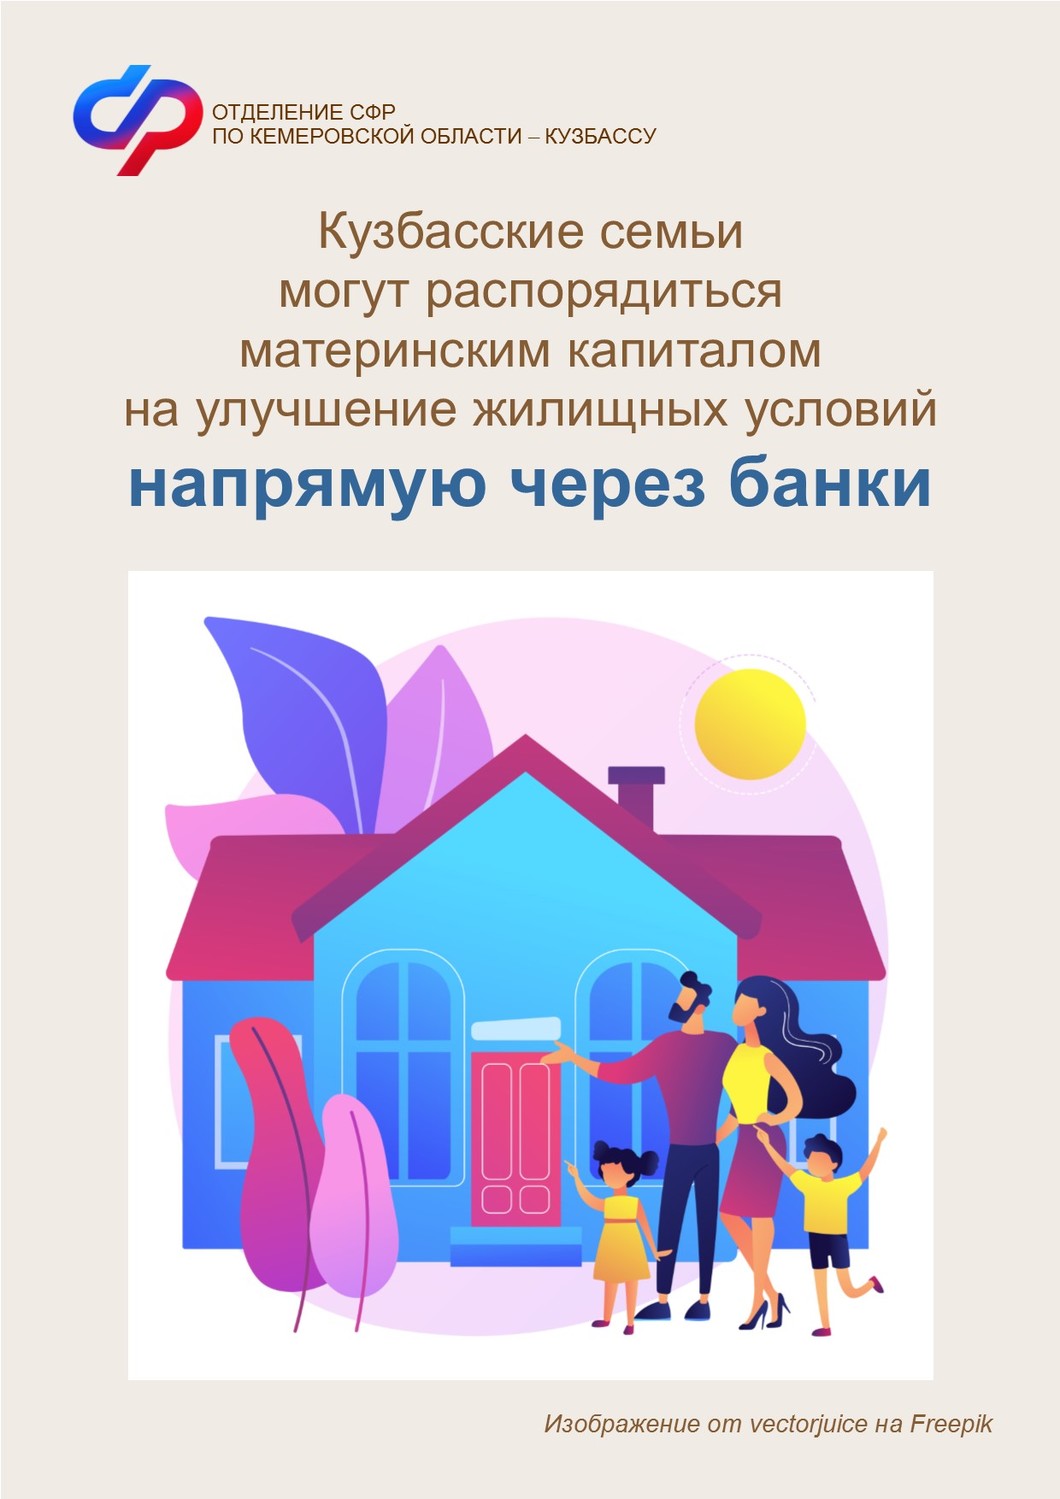 Кузбасские семьи могут распорядиться материнским капиталом на улучшение жилищных условий напрямую через банки